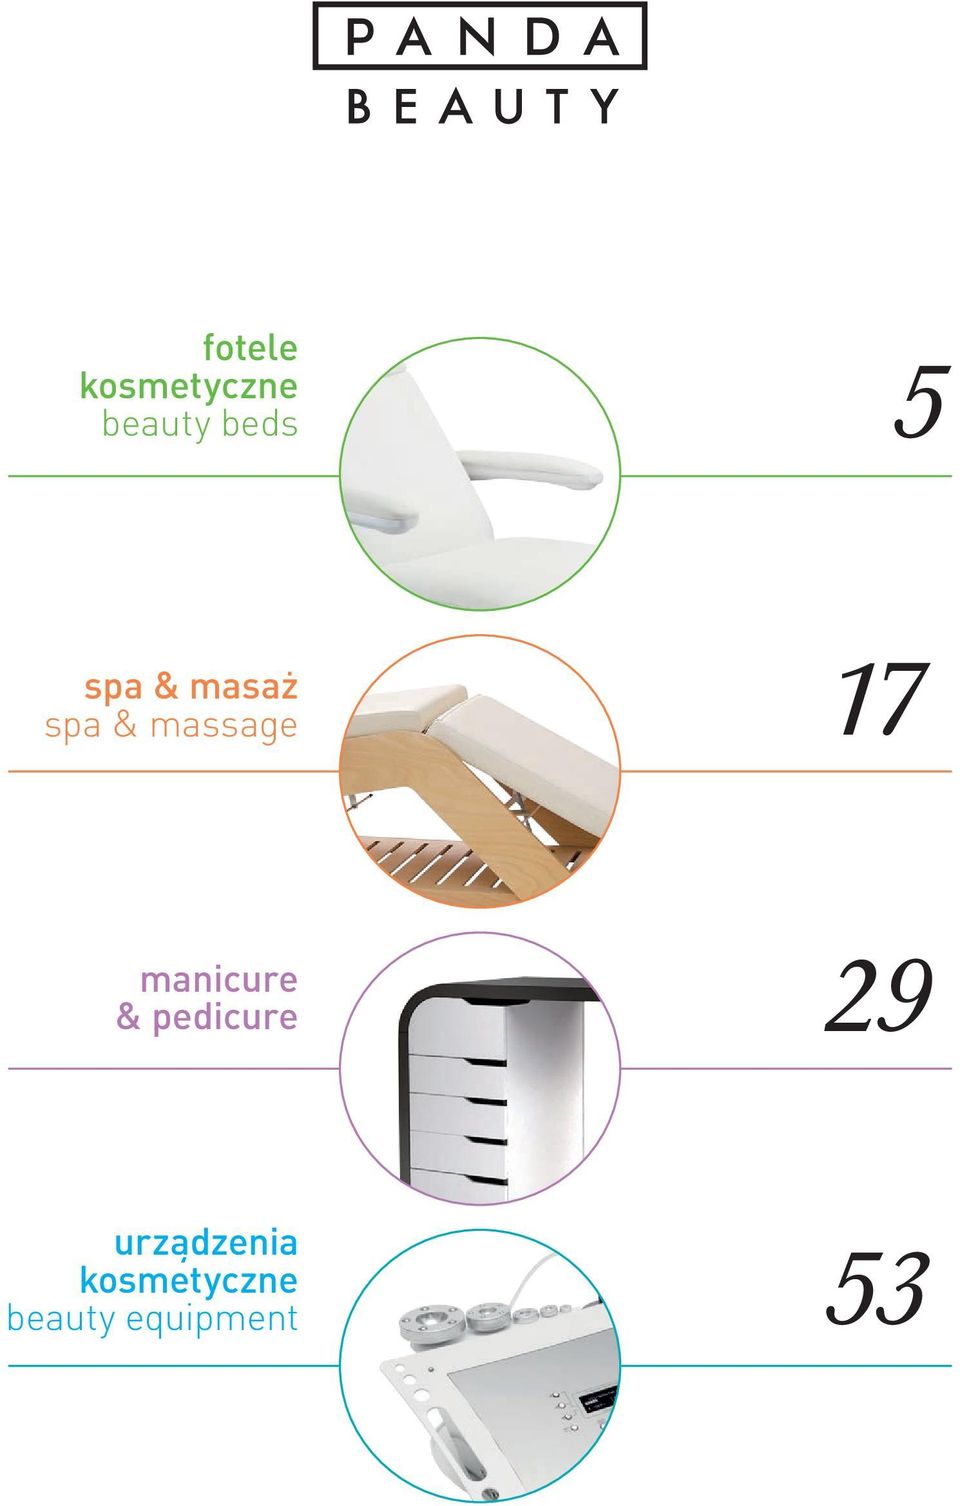 manicure & pedicure 29